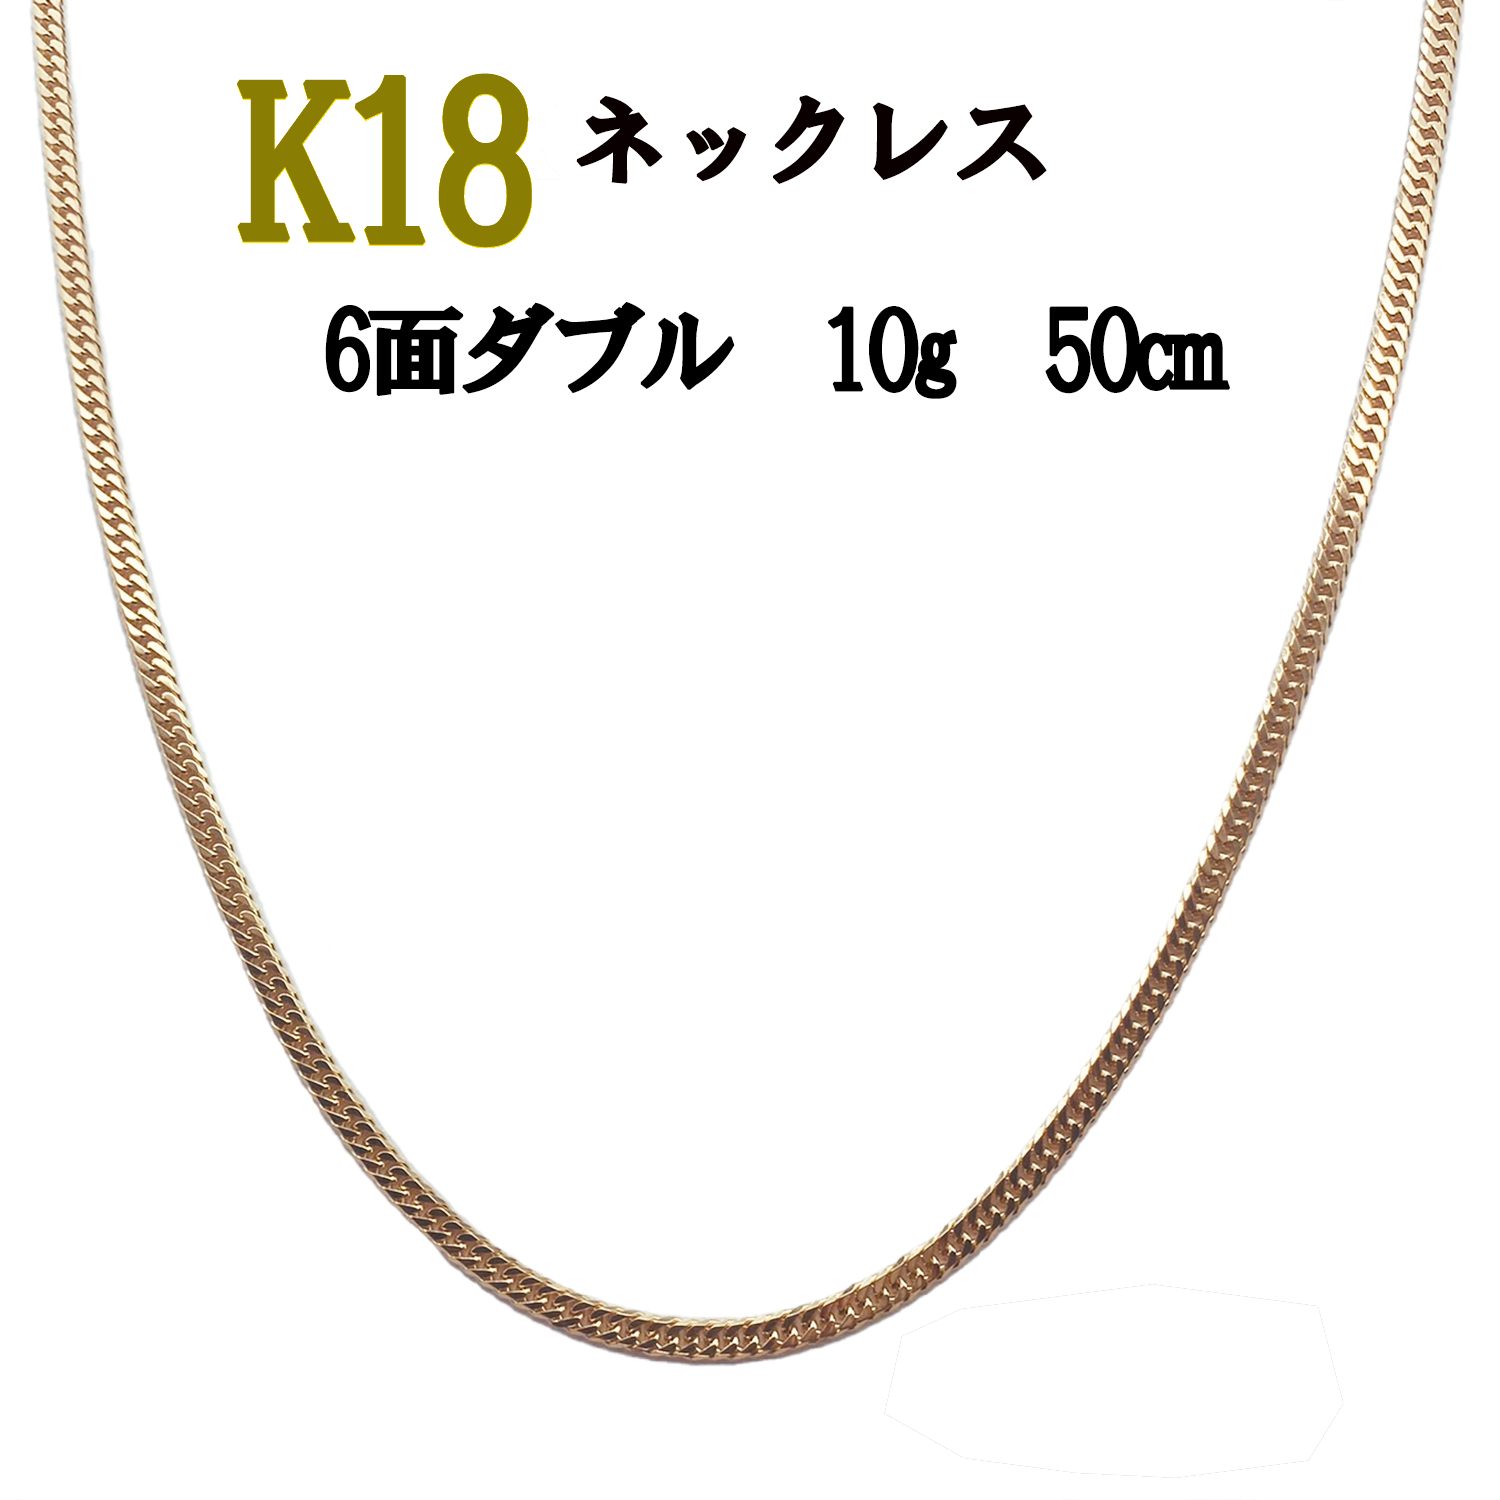 K18 喜平ネックレス 18金 10g 50cm 造幣局認定マーク 男女兼用